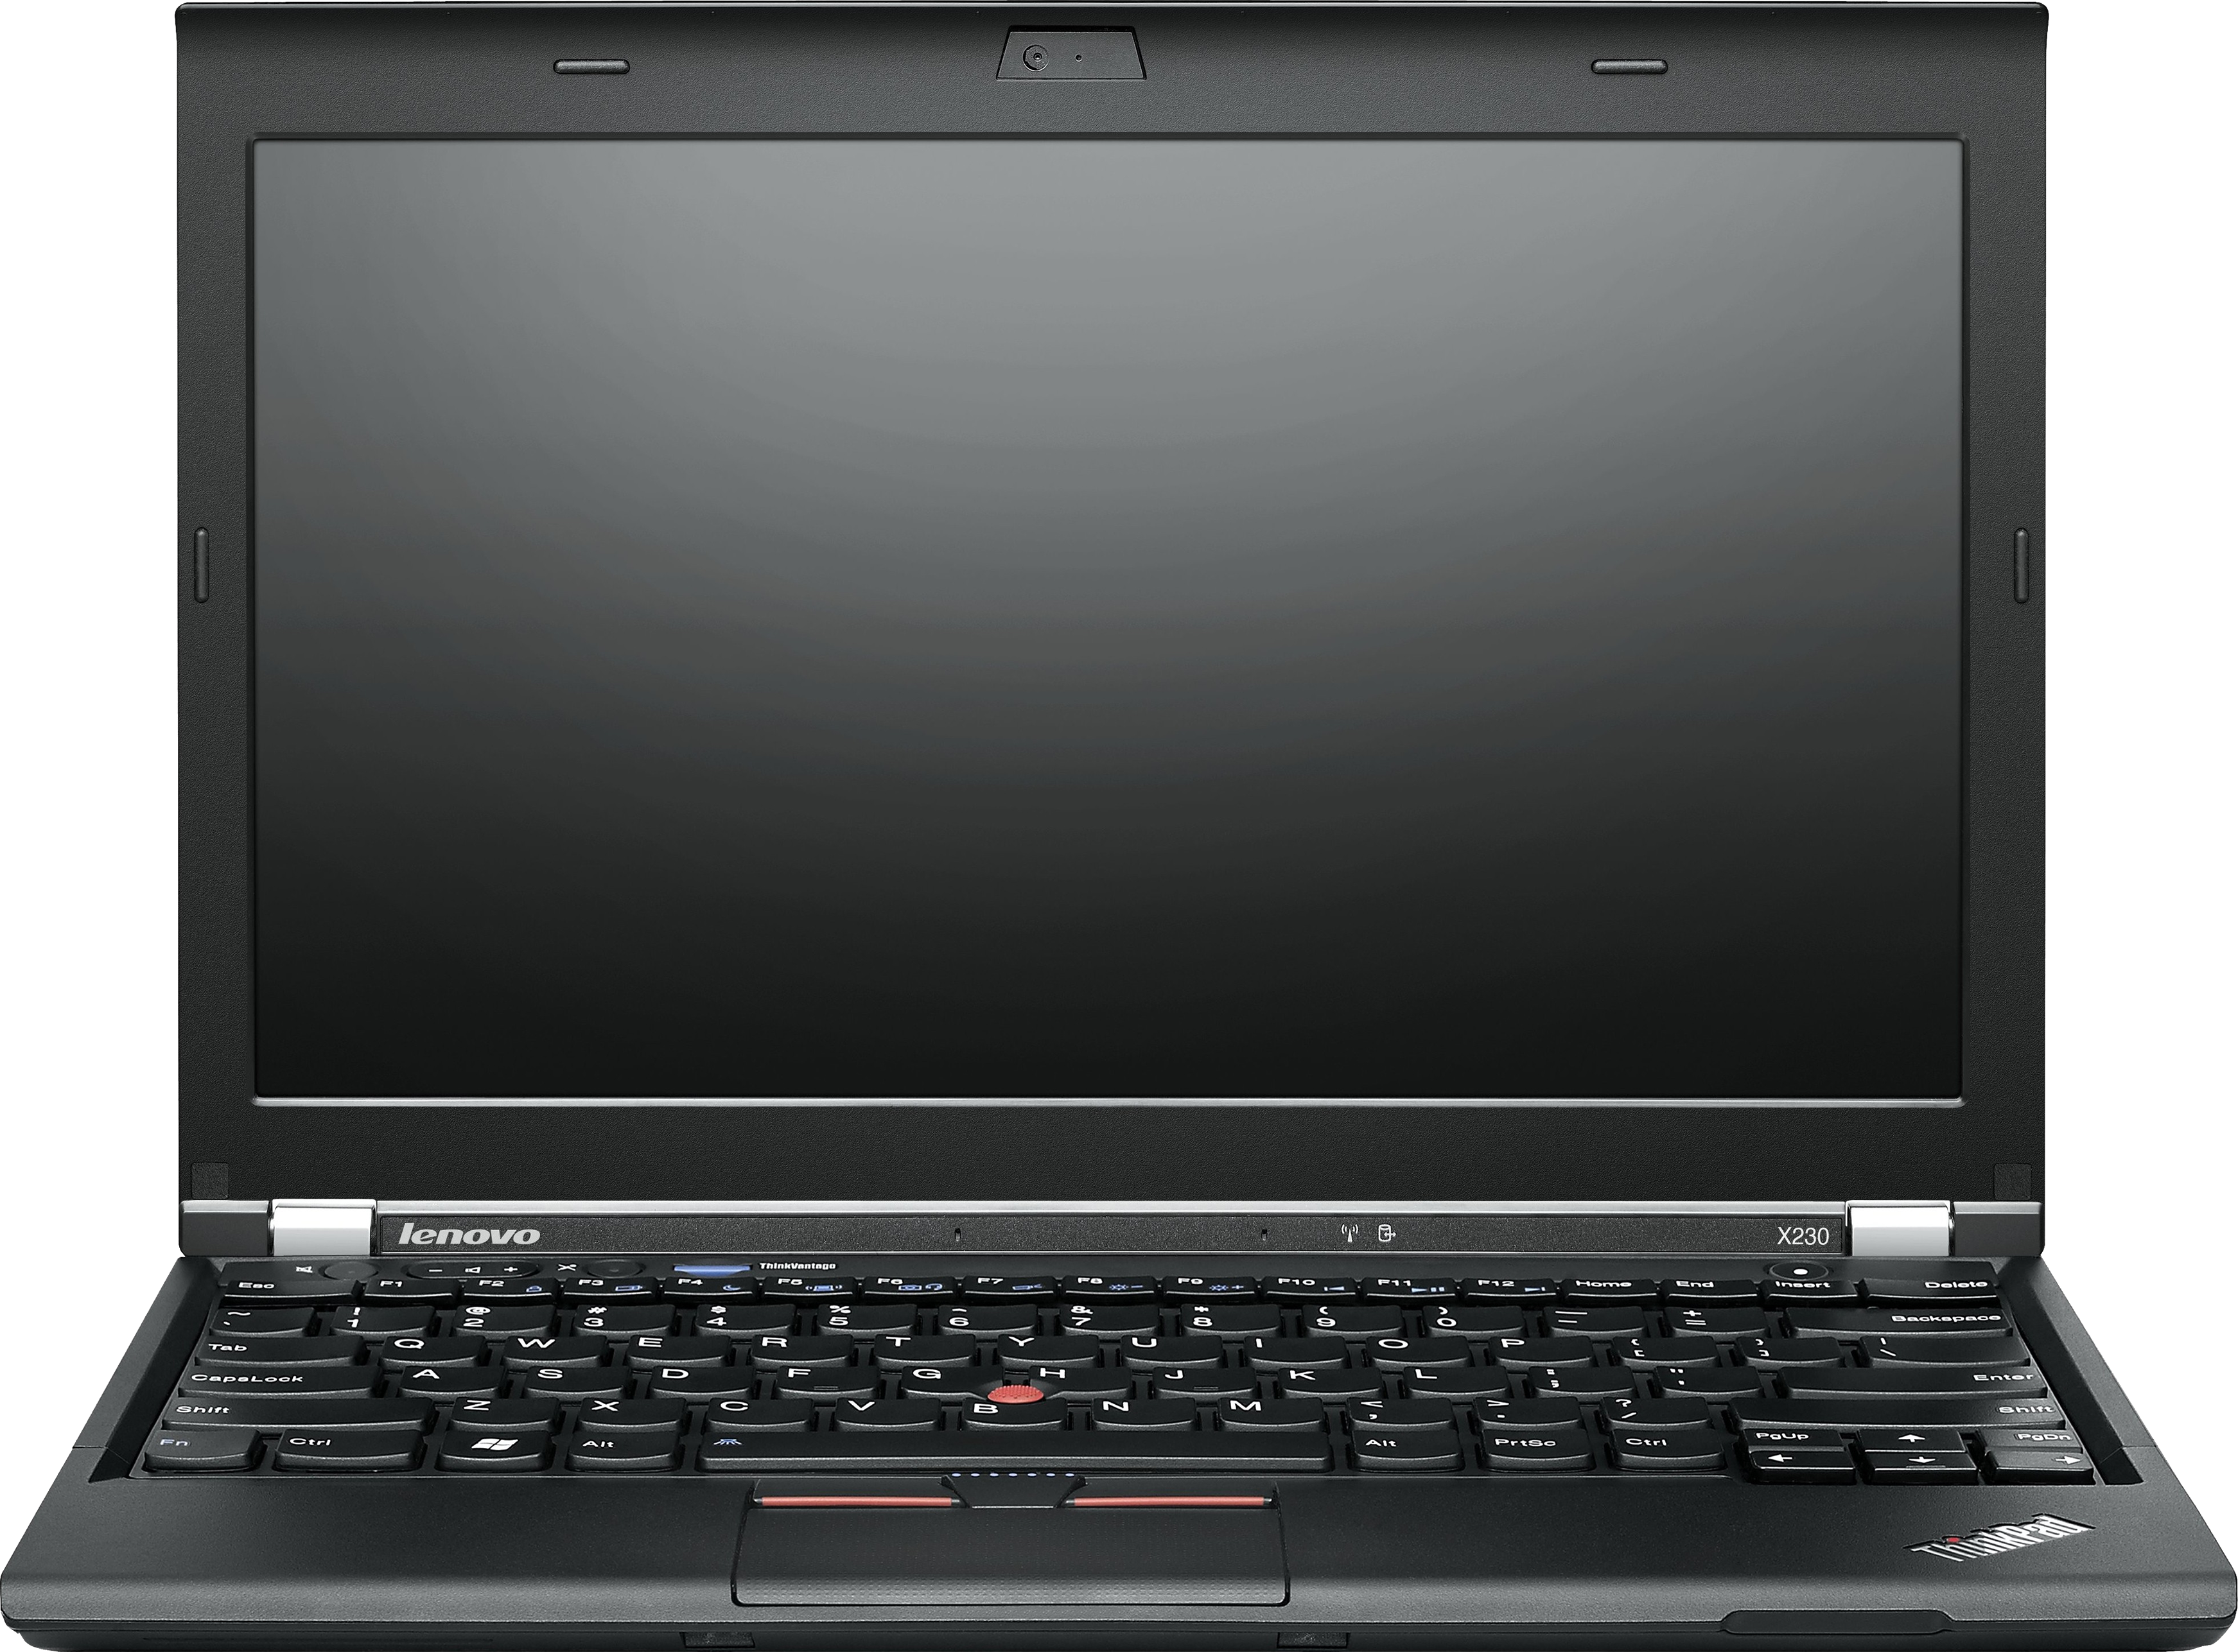 Laptop PNG HD - 143670